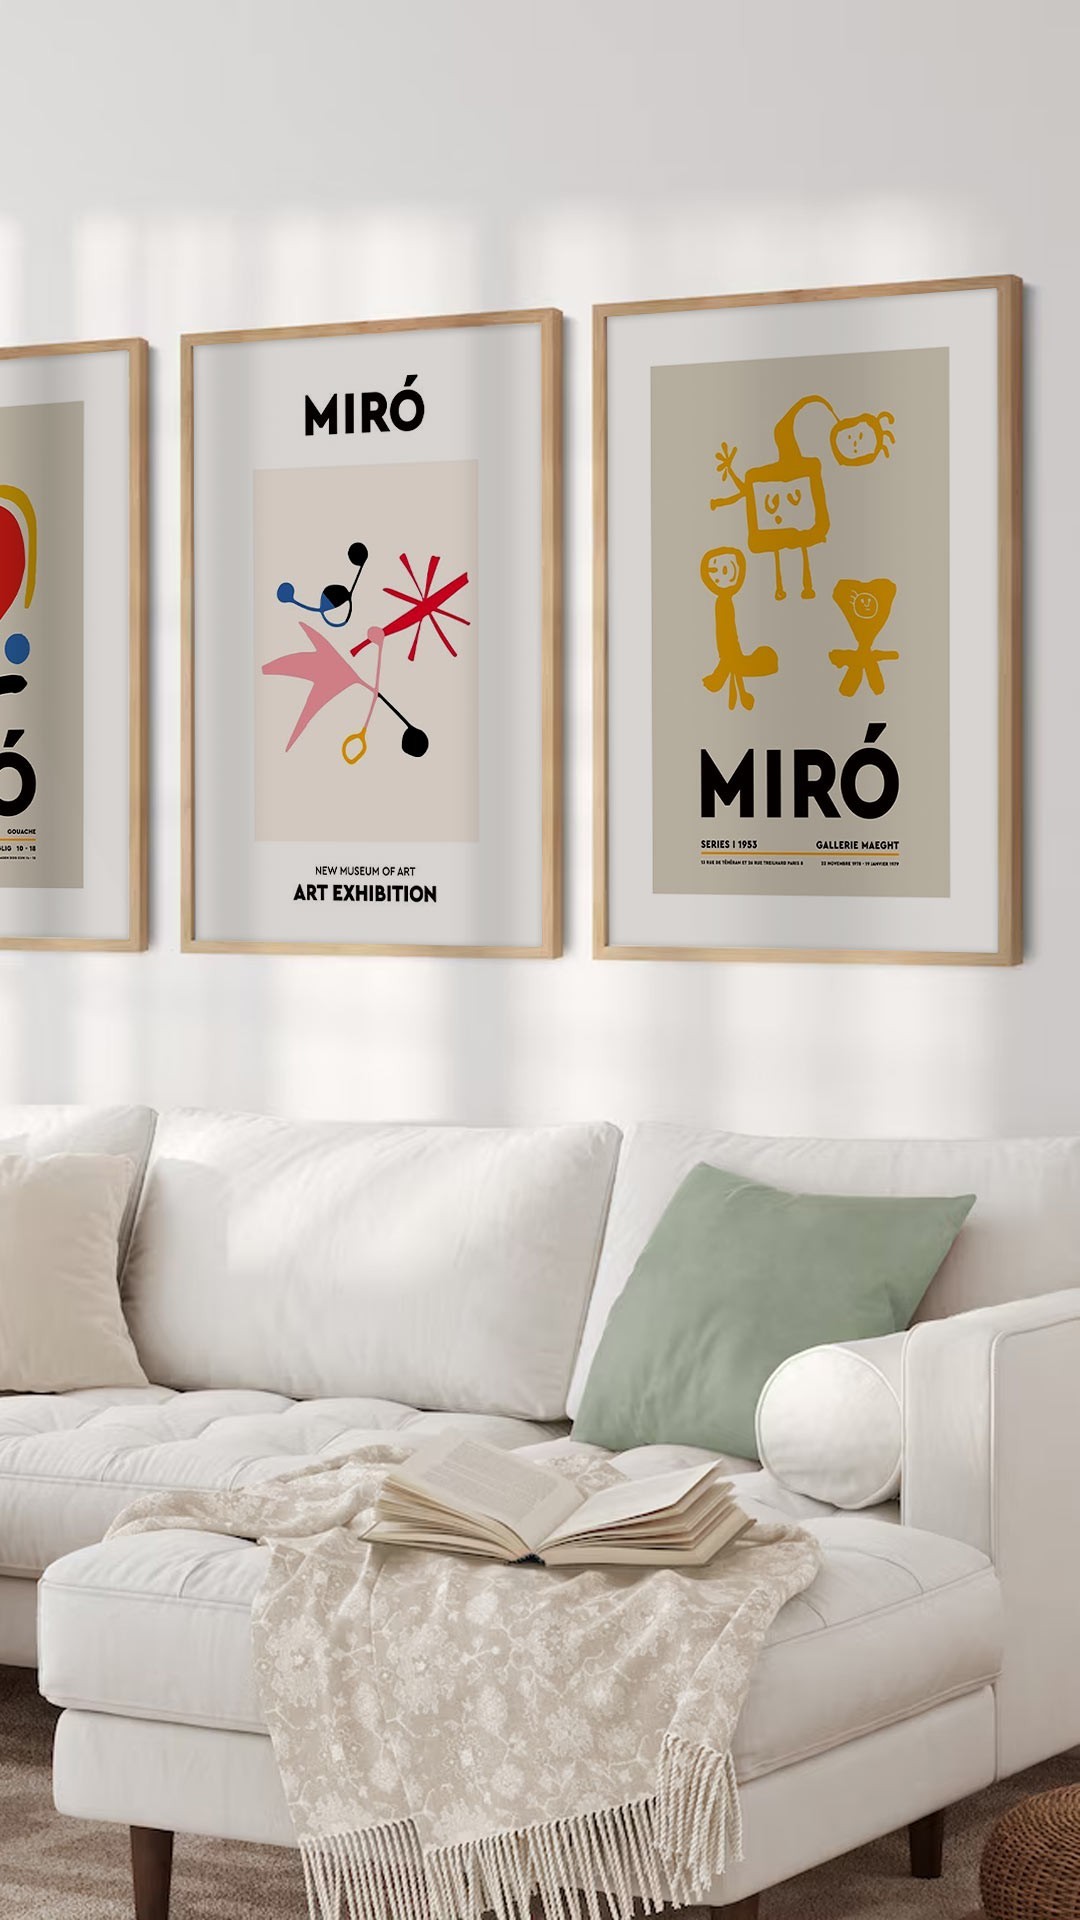 Αφίσες-Poster με έργα του Miró